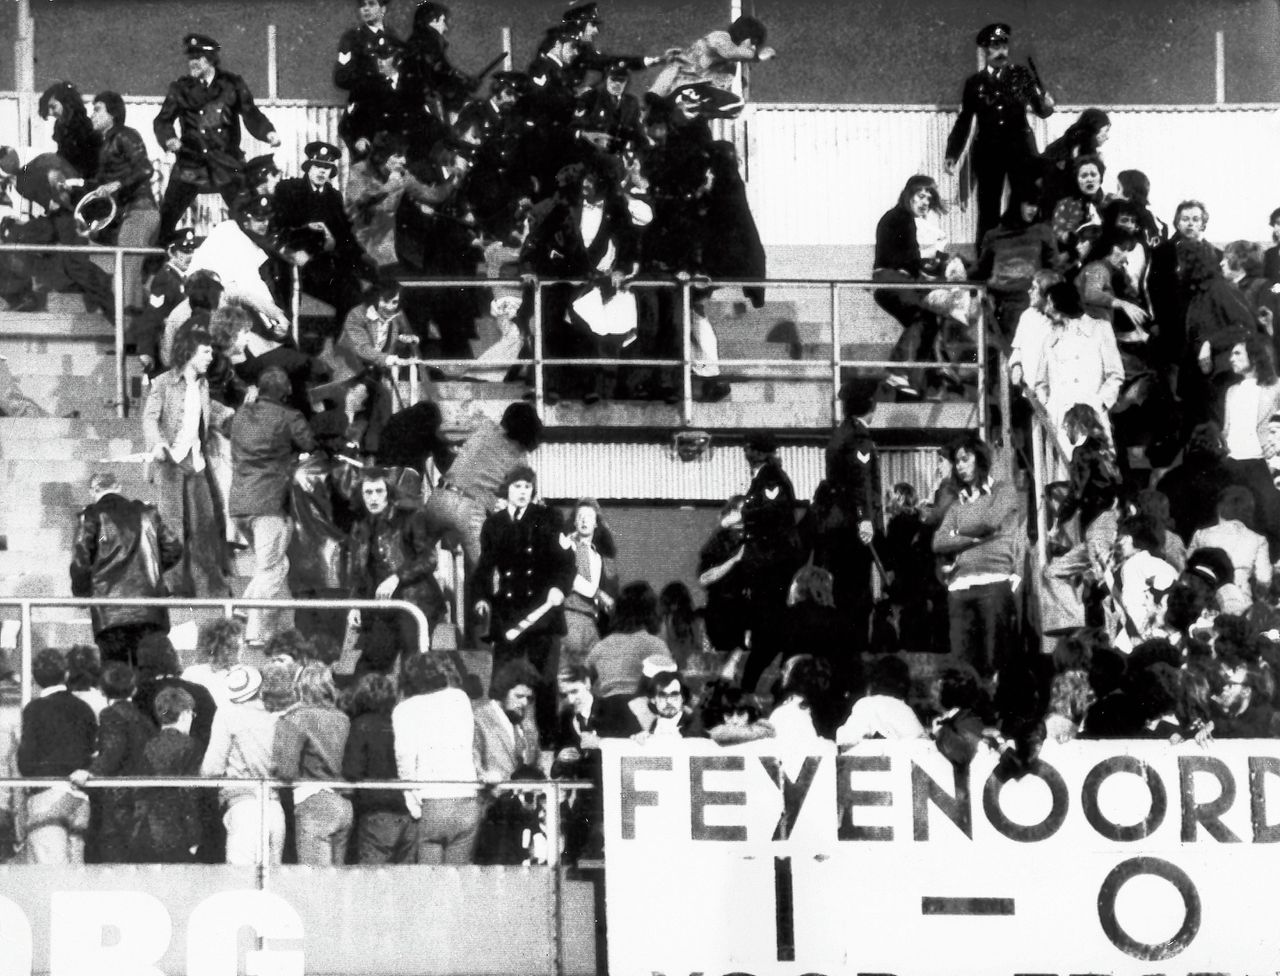 De politie moest in 1974 ingrijpen in de Kuip, waar Engelse hooligans zich misdroegen tijdens de finale van de UEFA Cup tussen Feyenoord en Tottenham Hotspur.